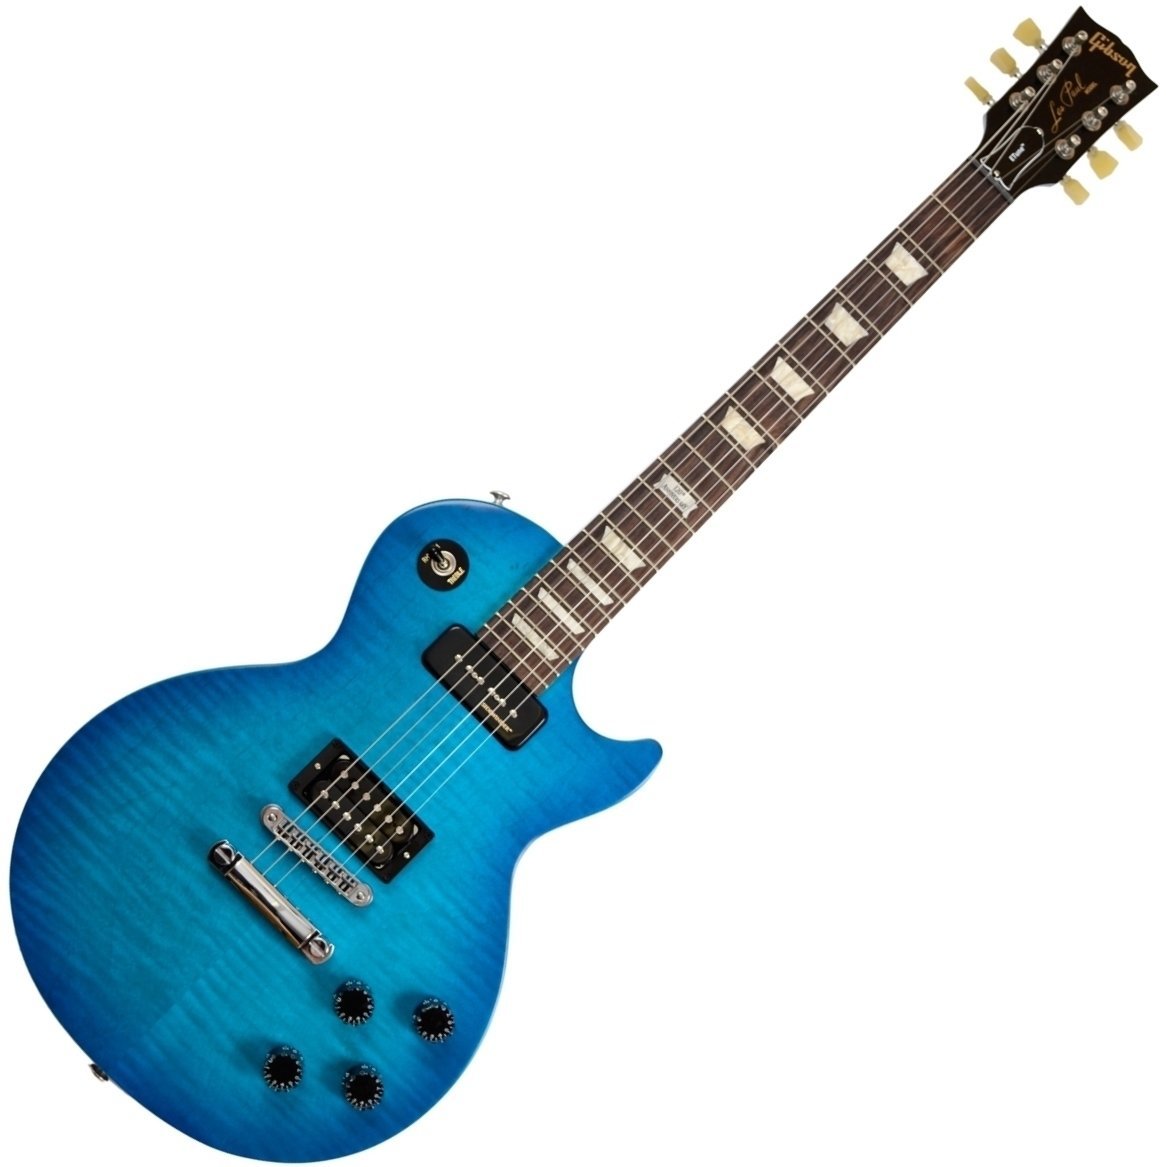 Ηλεκτρική Κιθάρα Gibson Les Paul Futura 2014 w/Min E Tune Pacific Blue Vintage Gloss